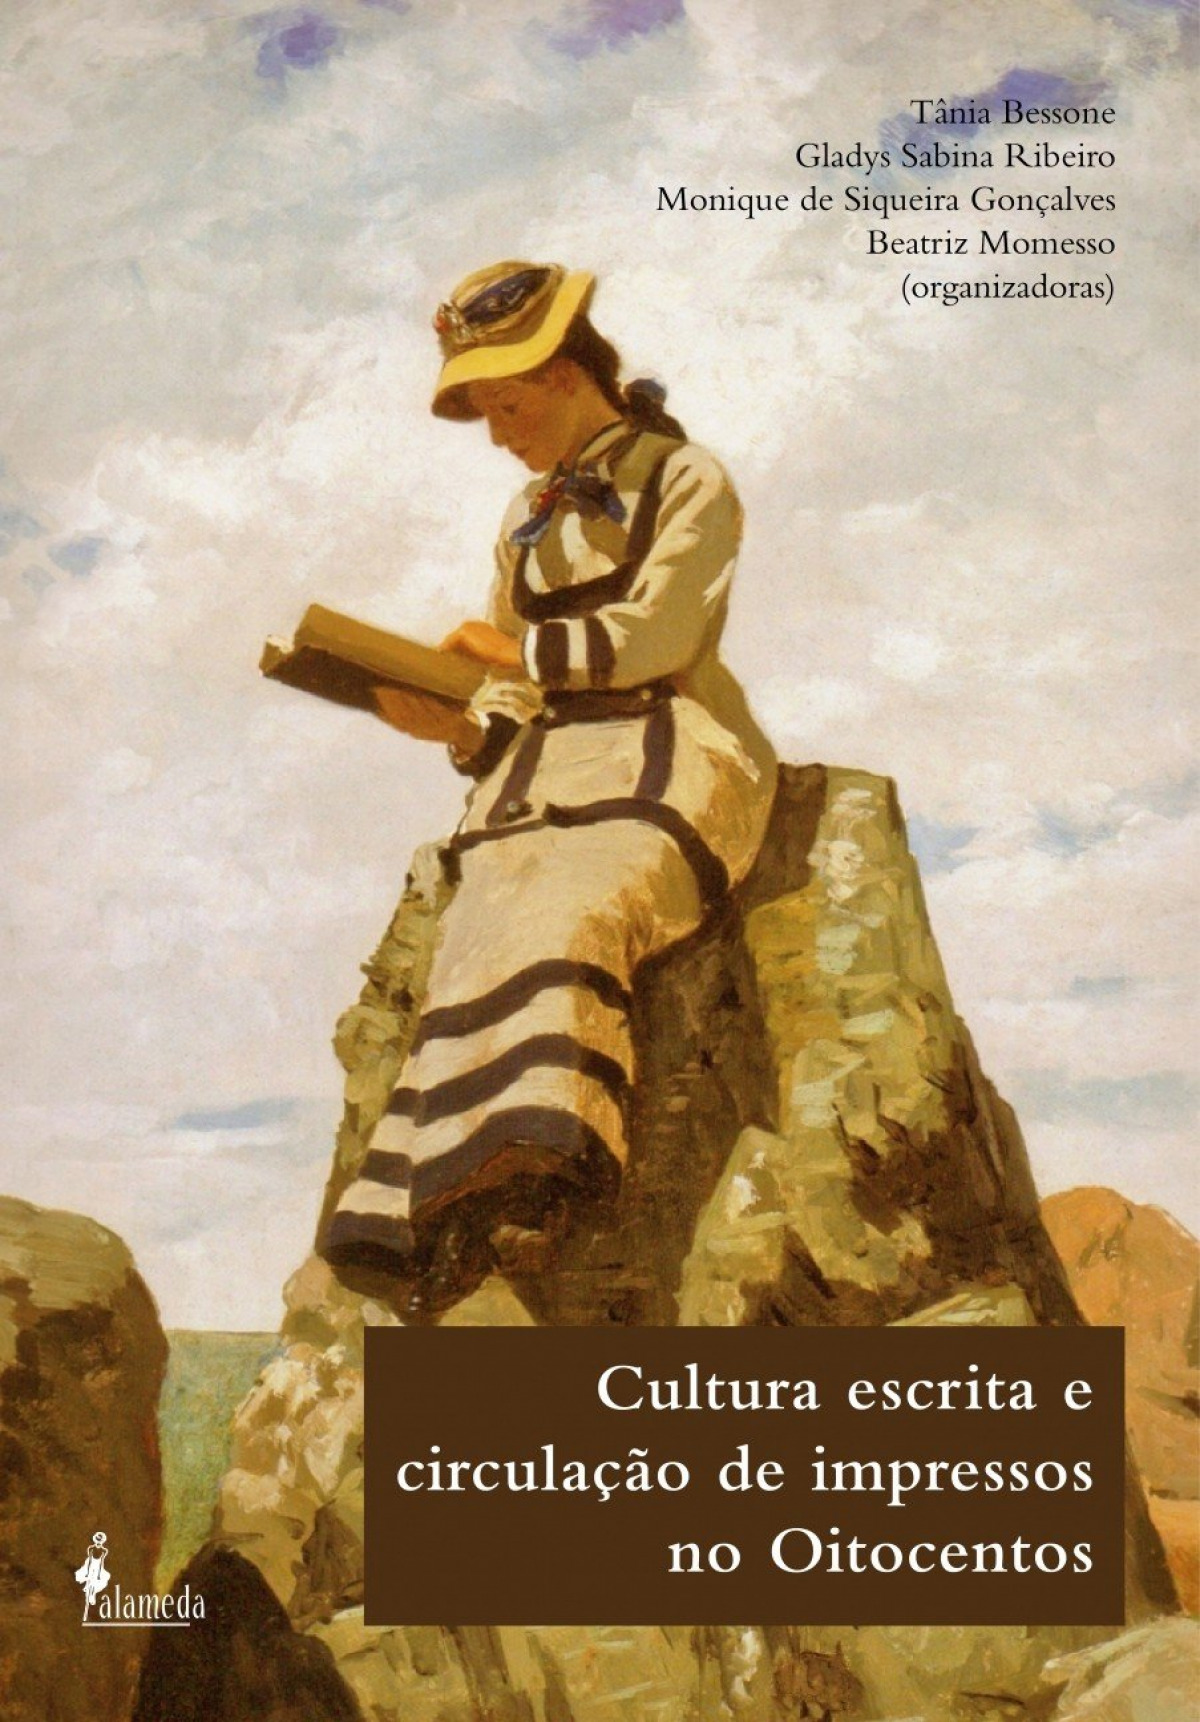 Cultura escrita e circulação de impressos no Oitocentos - Gladys Sabina Ribeiro (org.)